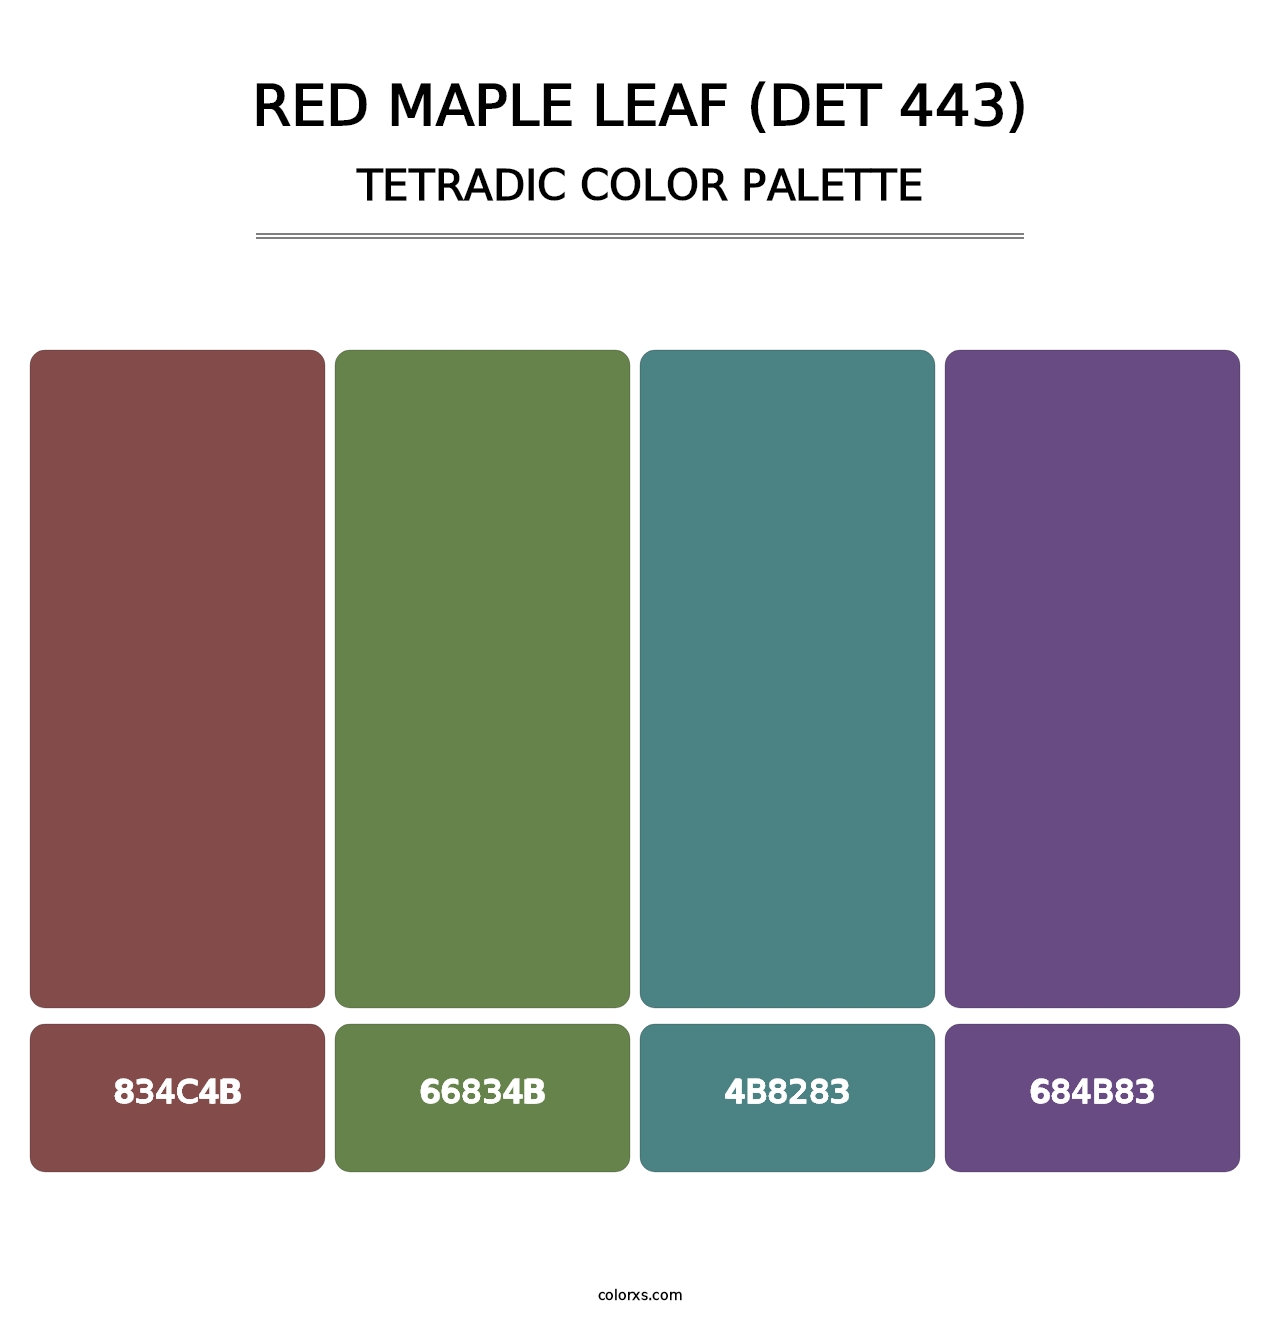 Red Maple Leaf (DET 443) - Tetradic Color Palette